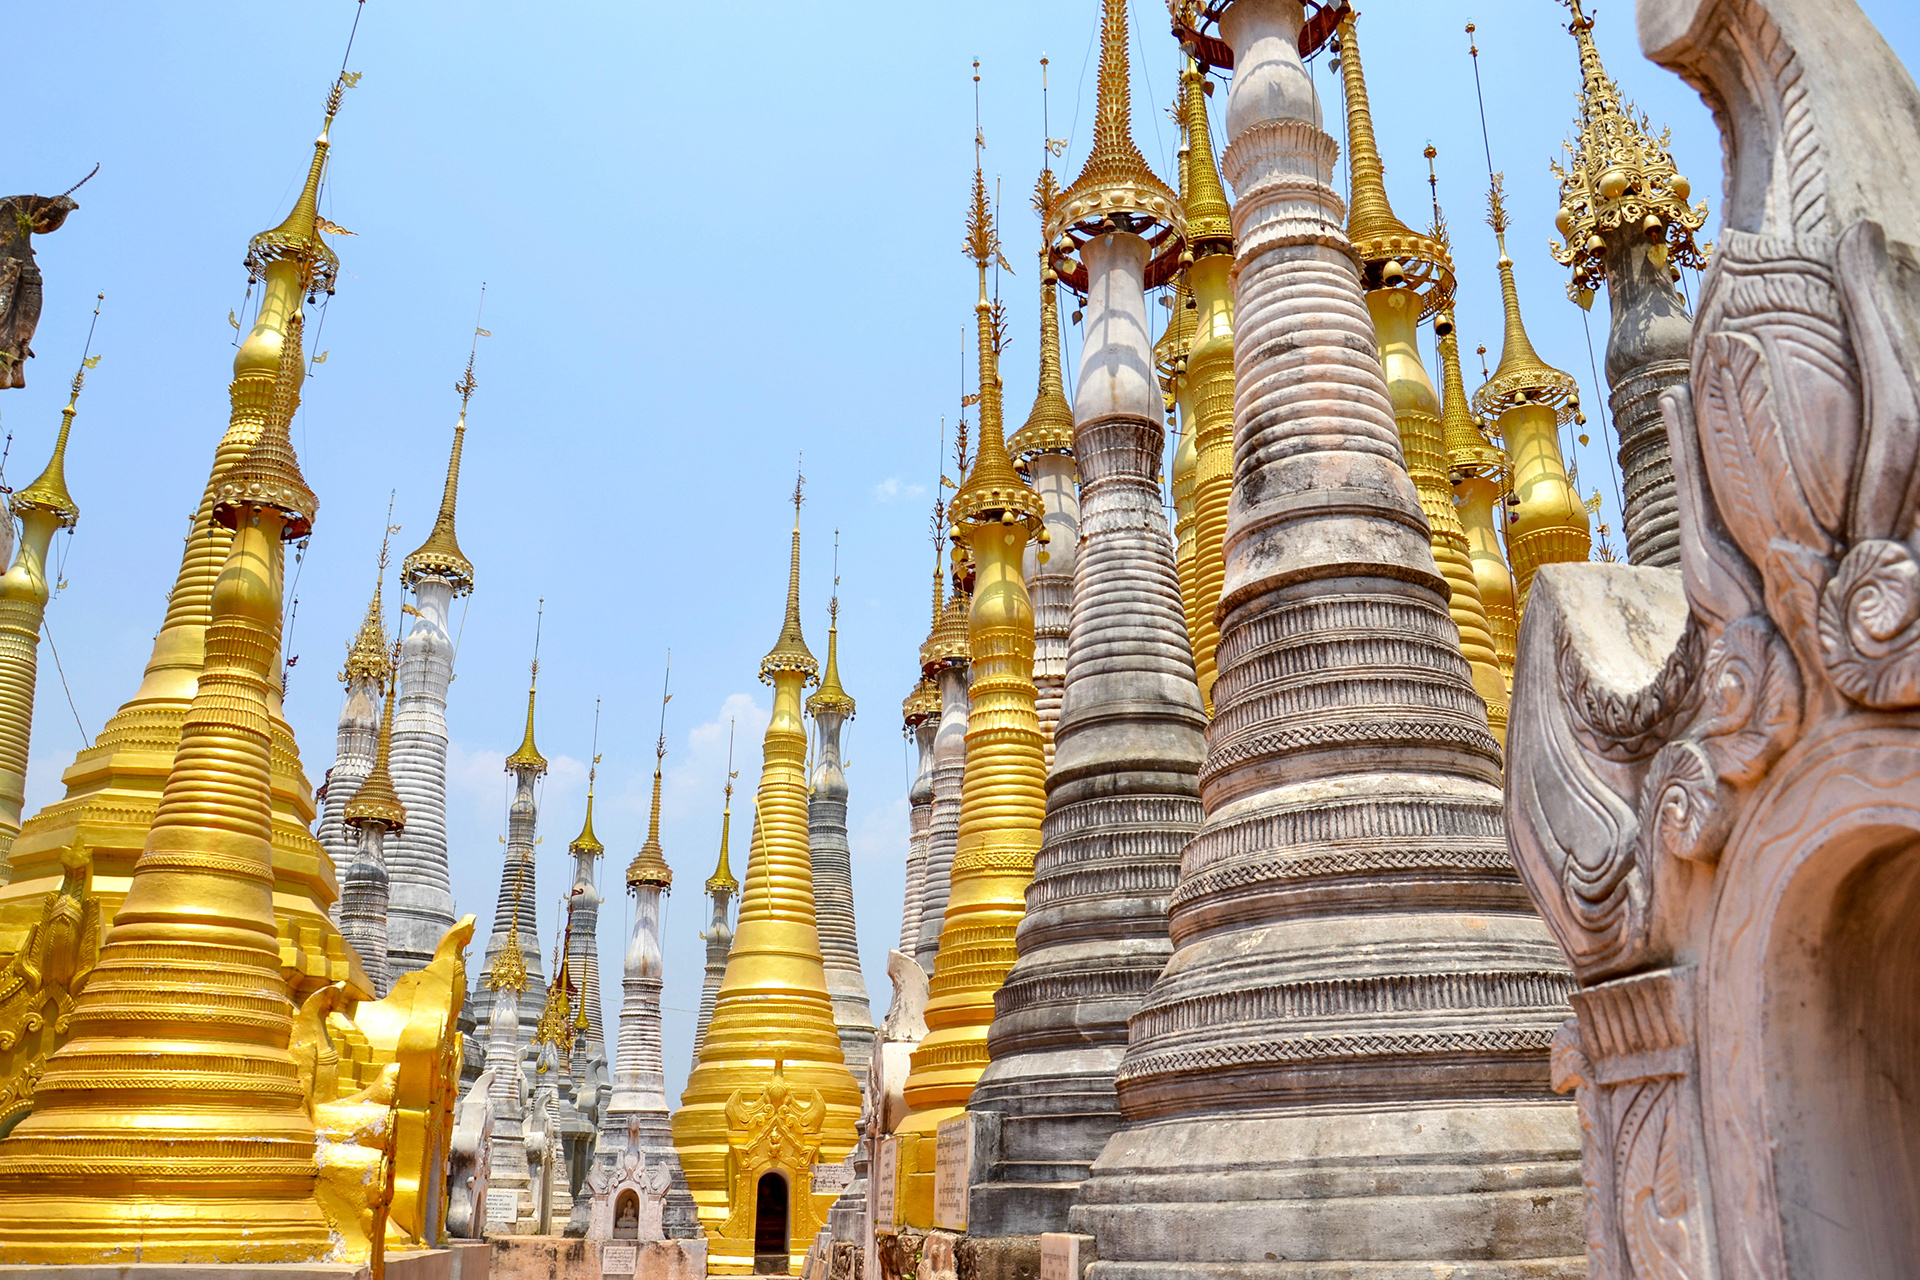 She Inn Thein Paya Goldene Stupas